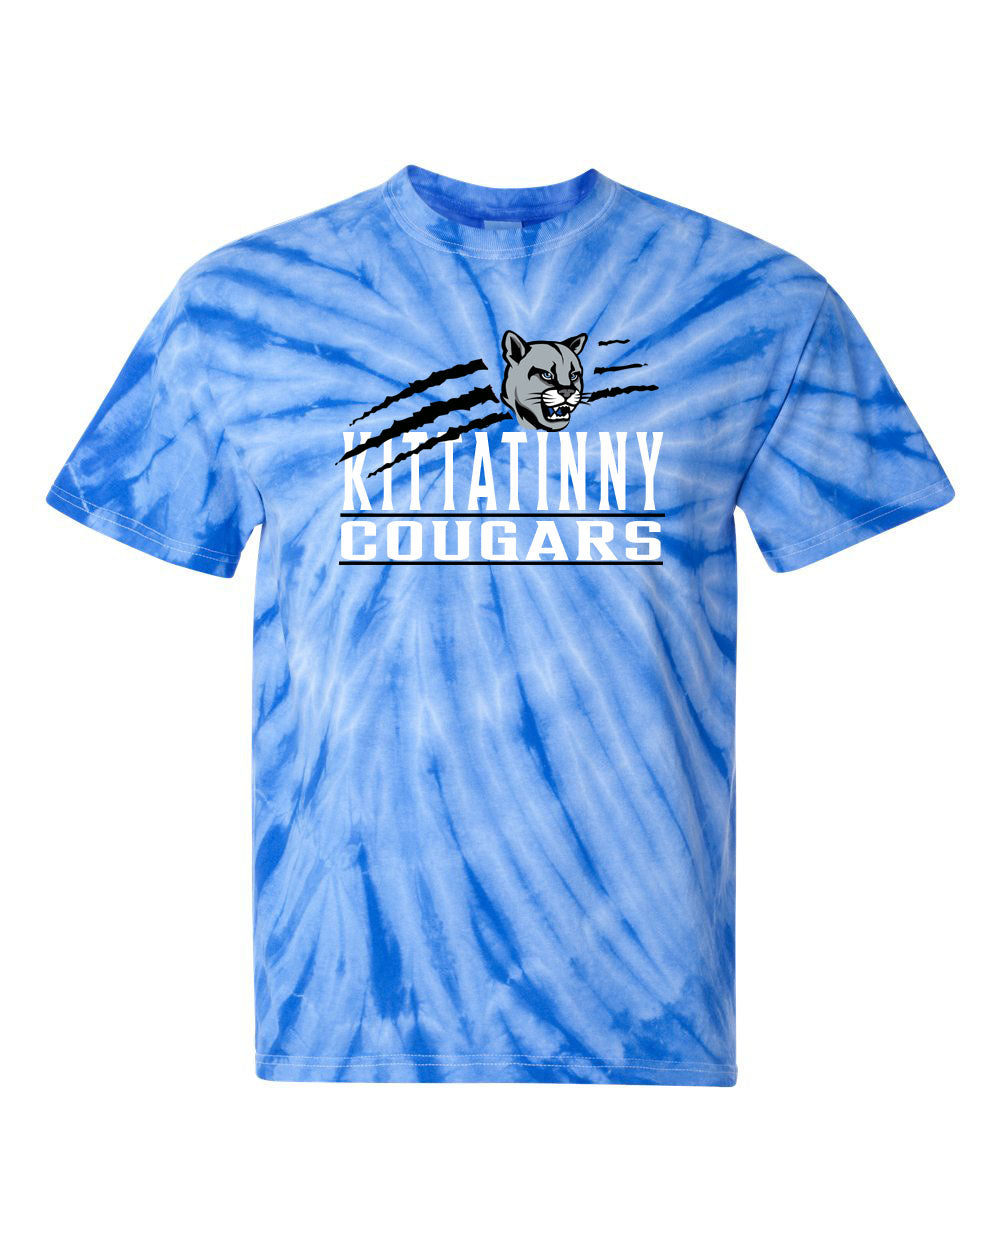 KRHS Tie Dye t-shirt Design 16